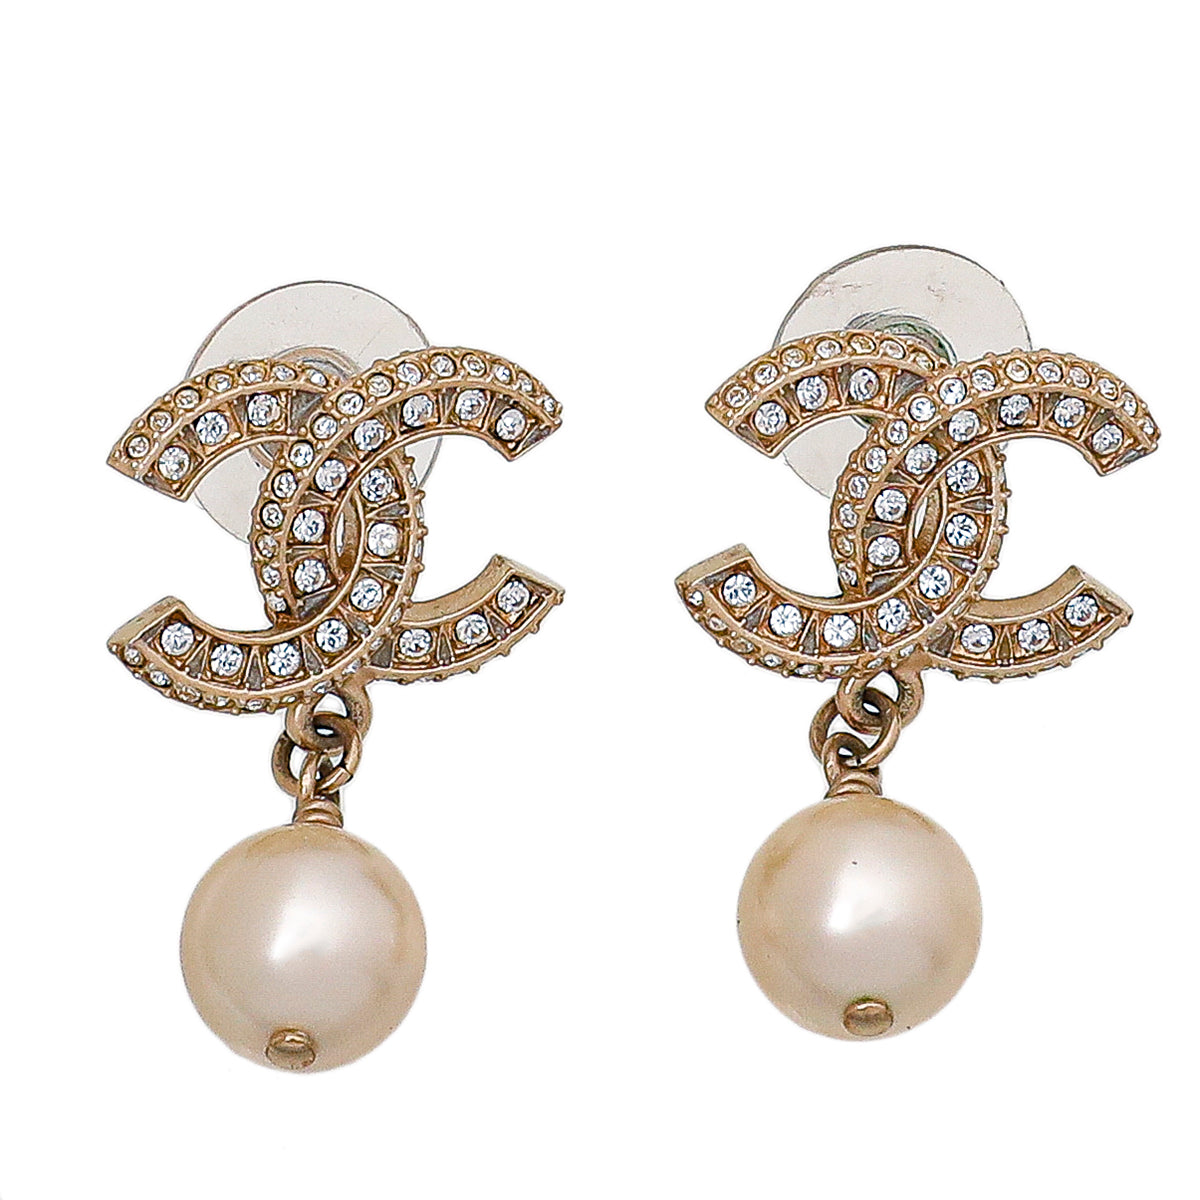 Cc earrings Chanel Gold in Metal  21009251